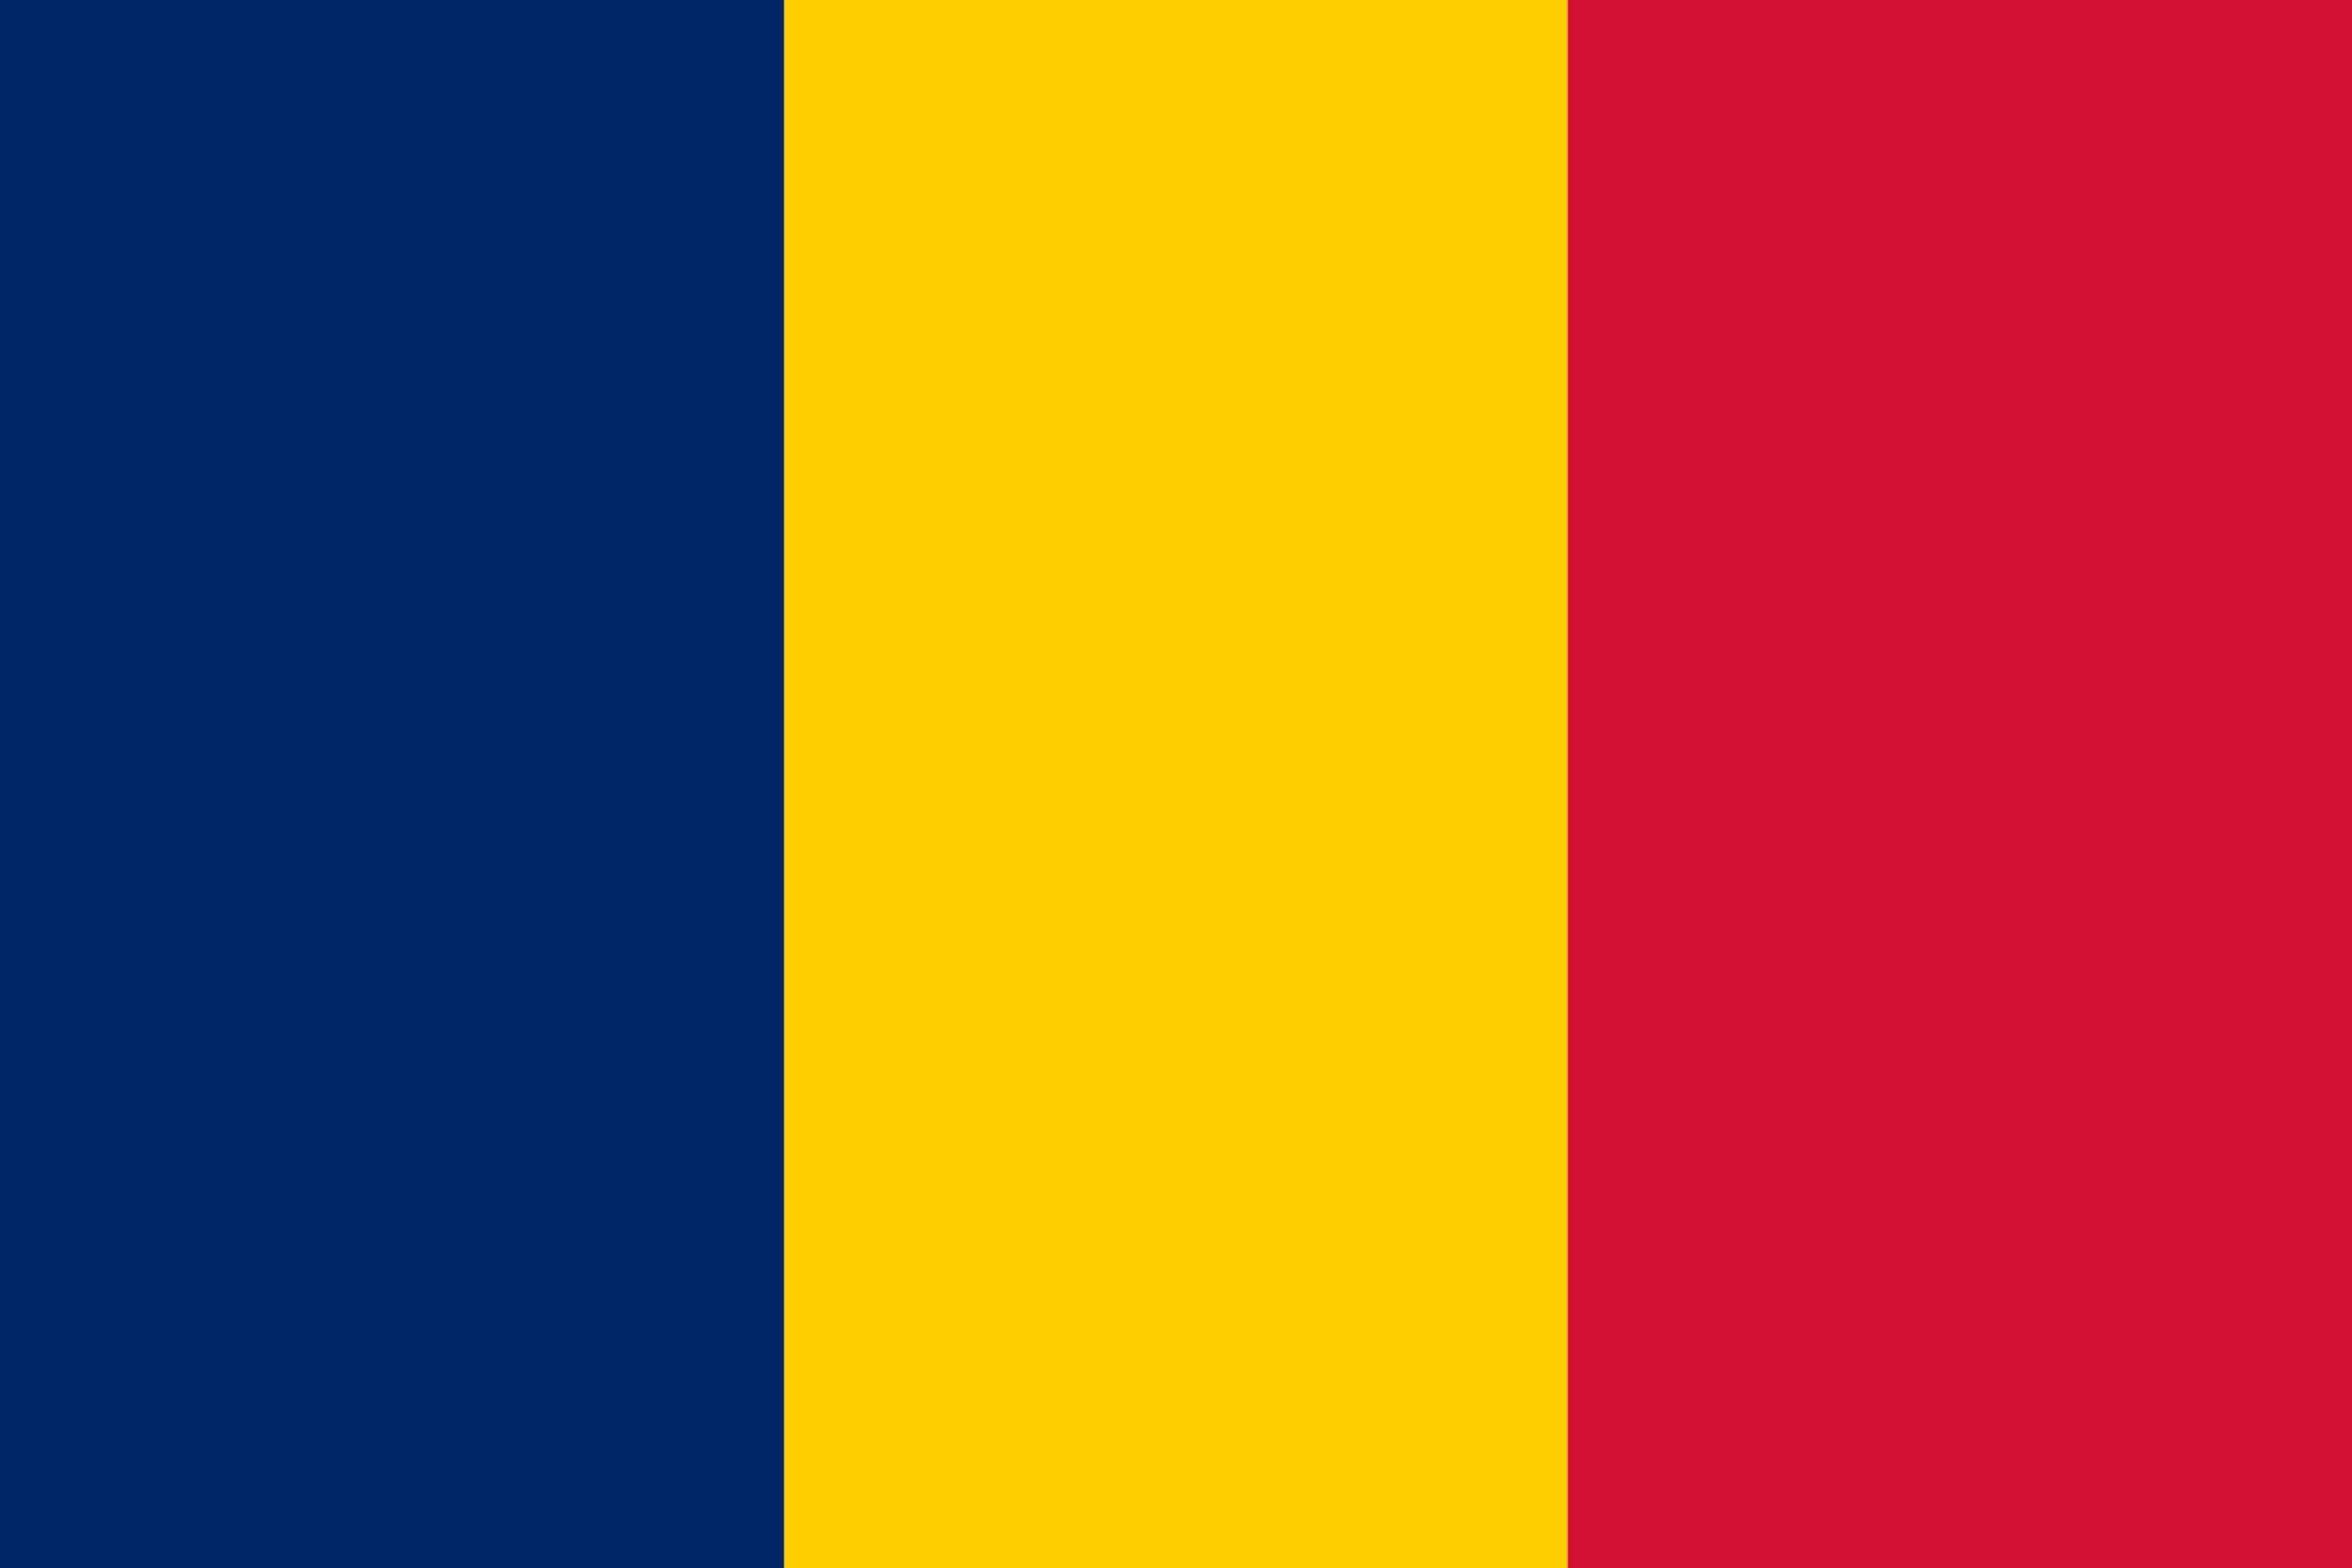 drapeau-tchad